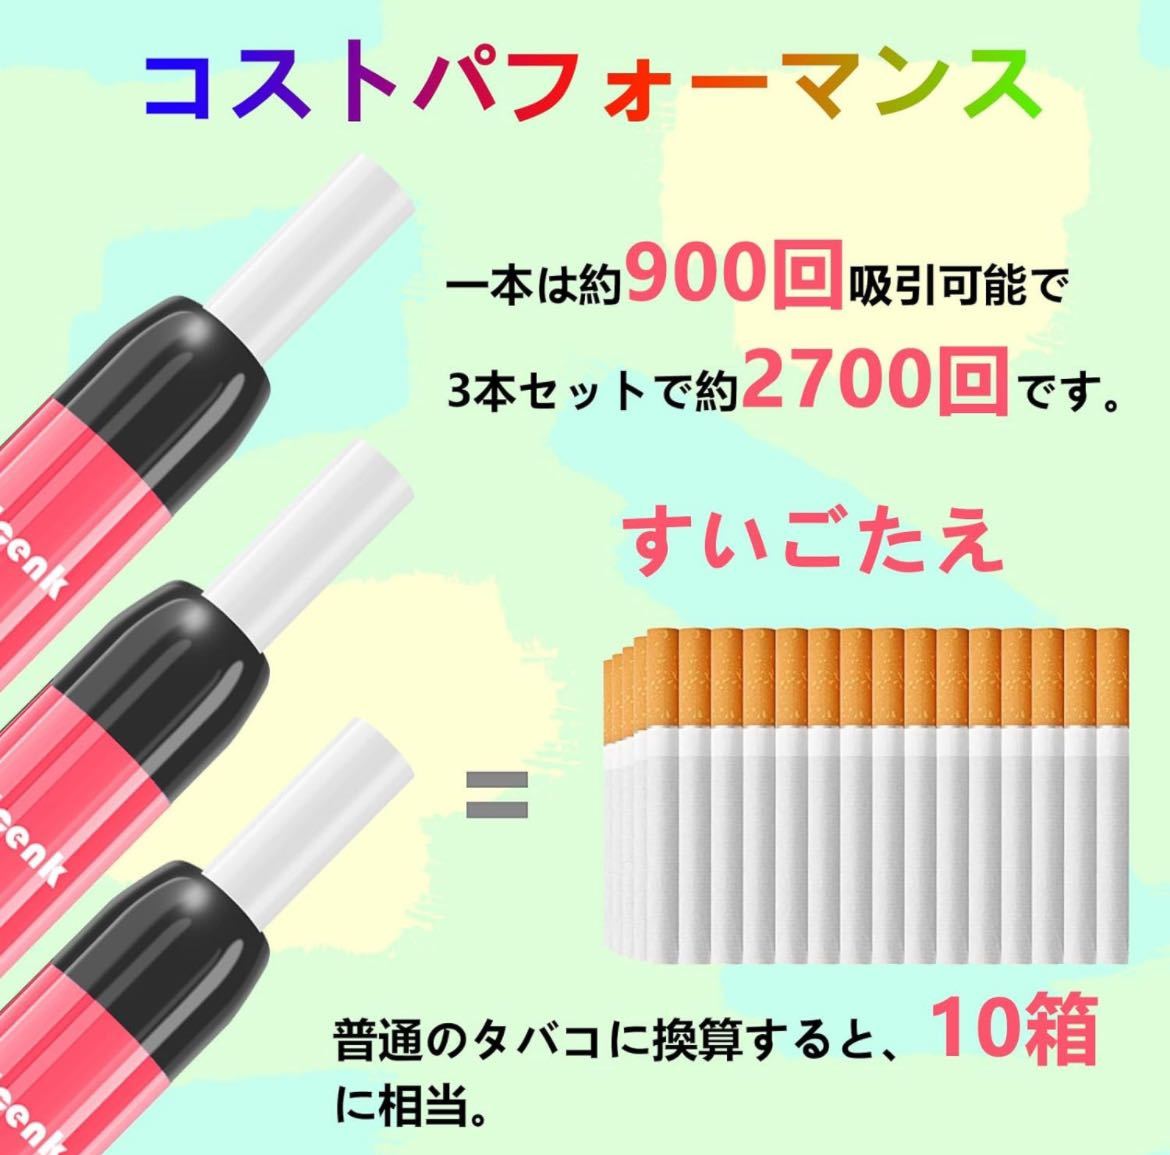 602p2338☆ Ecenk 7 Pro 電子タバコ 使い捨て 2700回吸引可能 禁煙補助に最適 vape 爆煙 ニコチンなし タール無し でんしたばこ の画像4